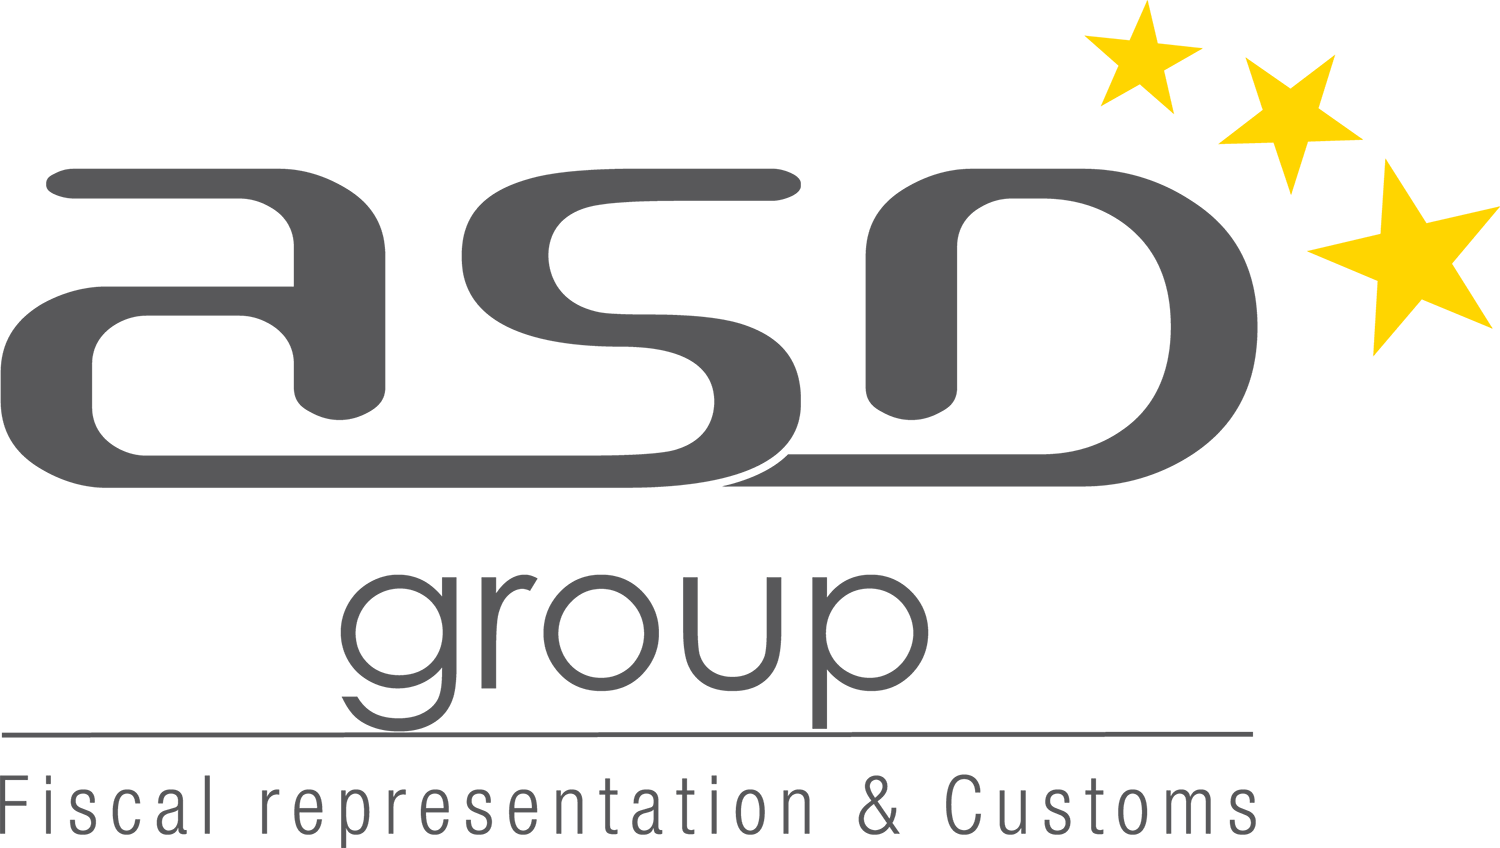 ASD Group